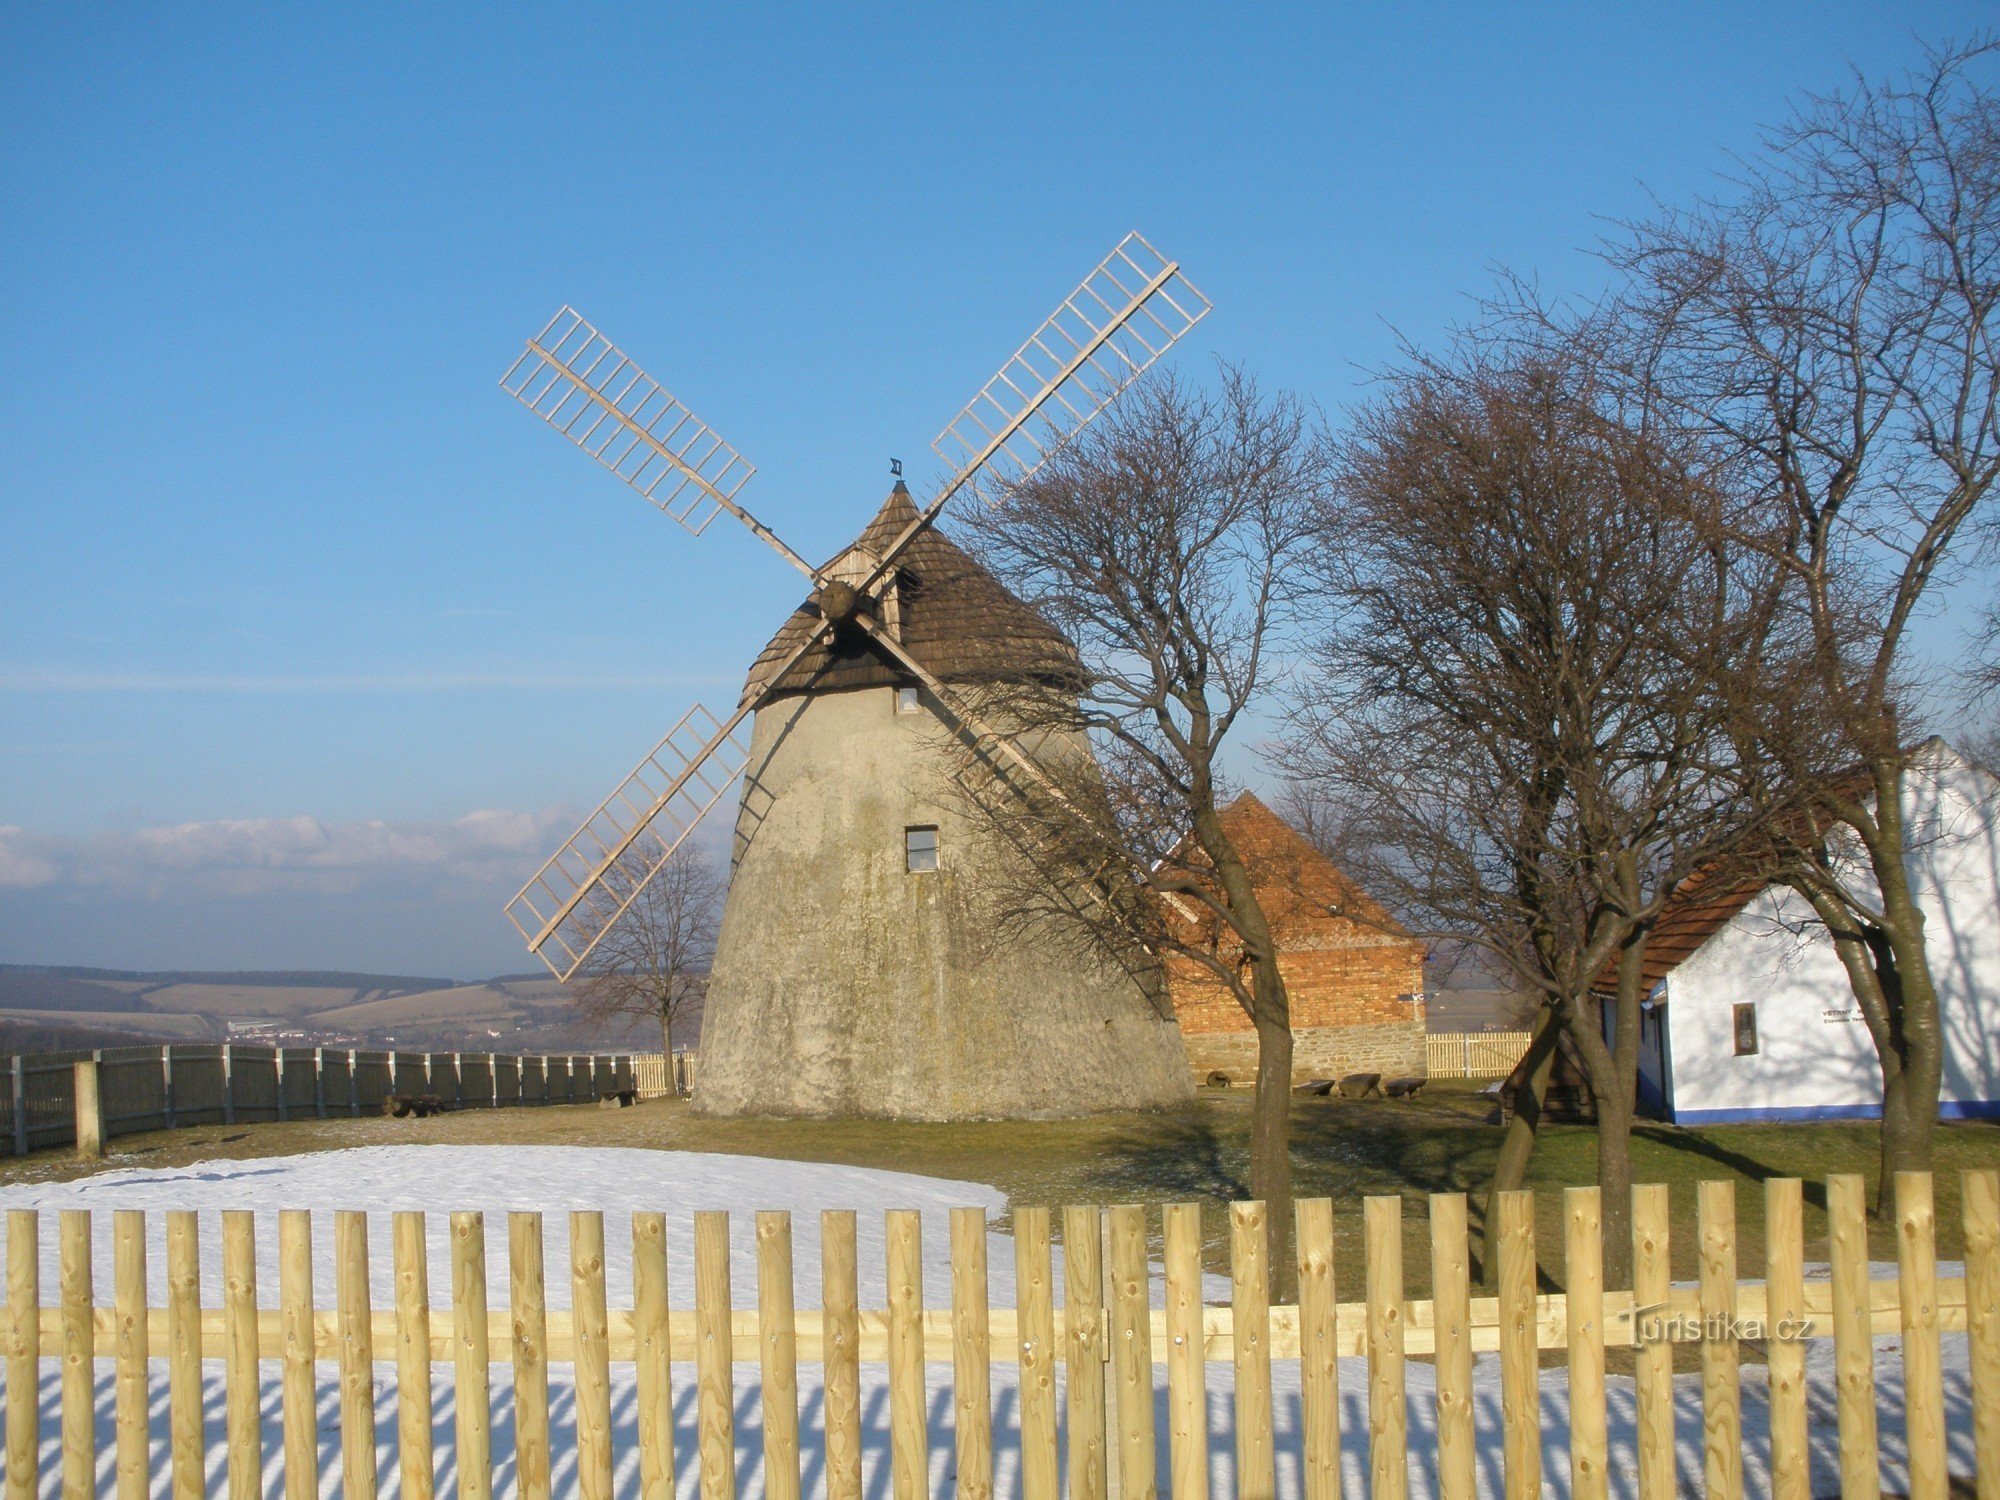 Kuželovský mill - technical monument